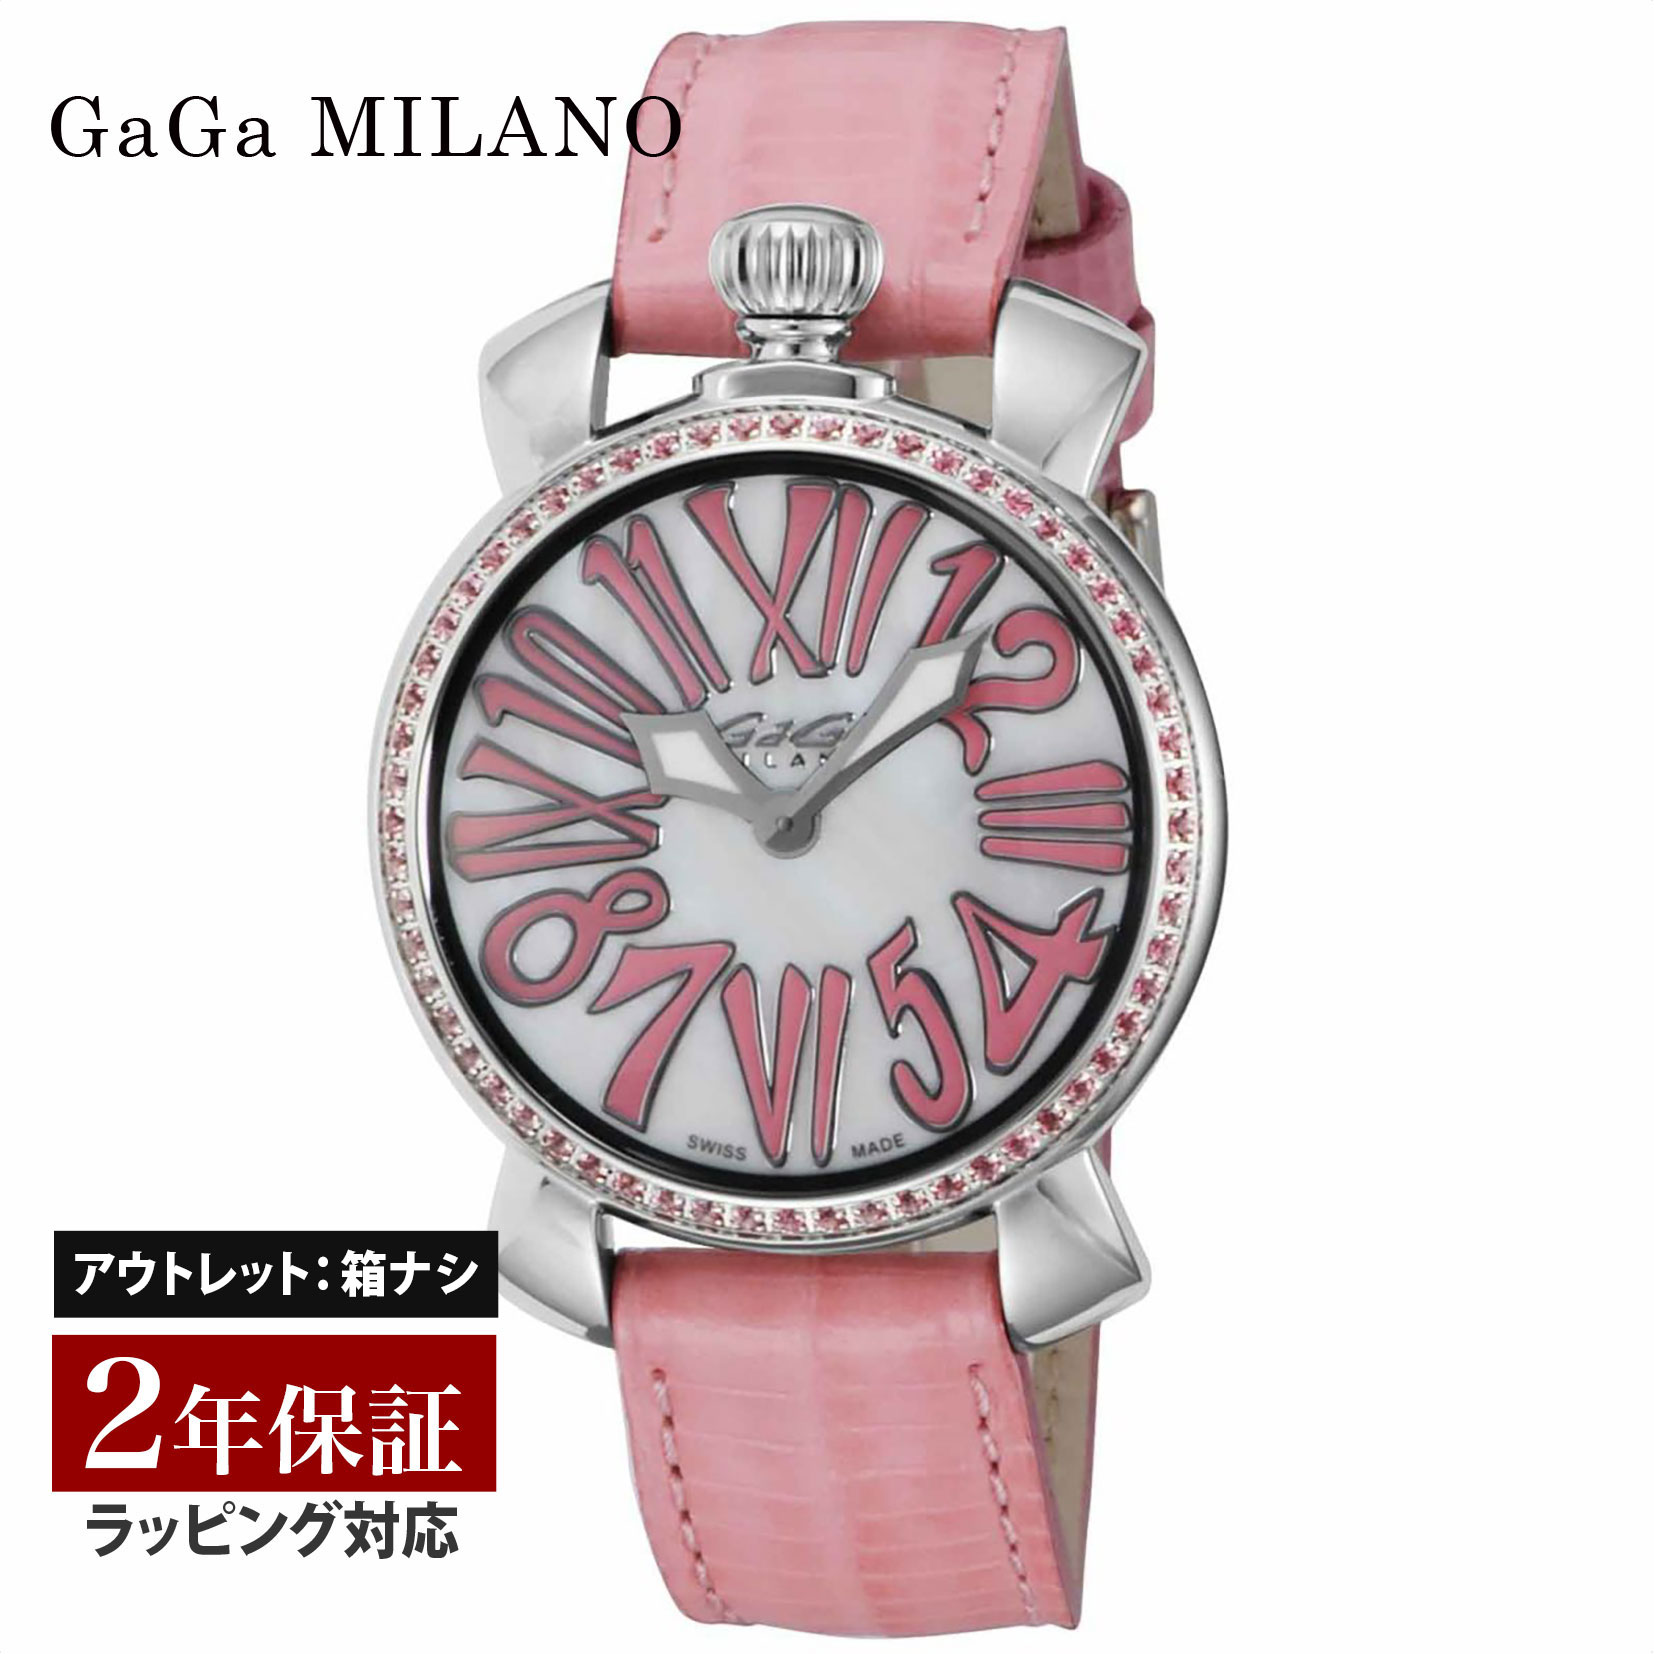 【クリアランスSALE】 GaGaMILAN ガガミラノ MANUALE 35MM STONES メンズ レディース スイス製 ガガ ミラノ クォーツ ホワイト 6025.02 腕時計 高級腕時計 